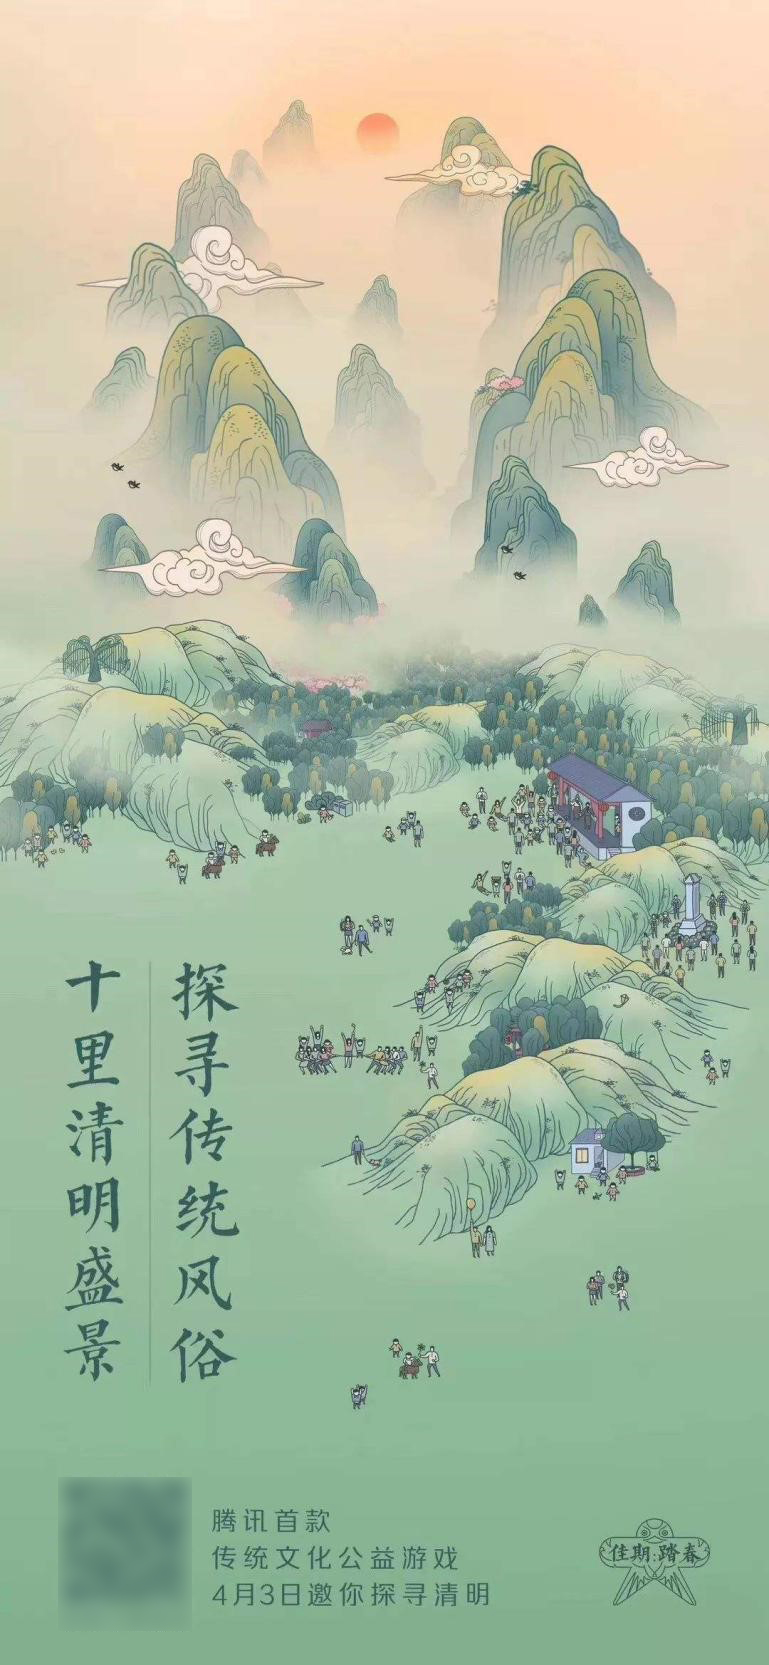 全新方式演绎中华文化之美 拼图解谜手游《佳期-月圆》9月10日上线